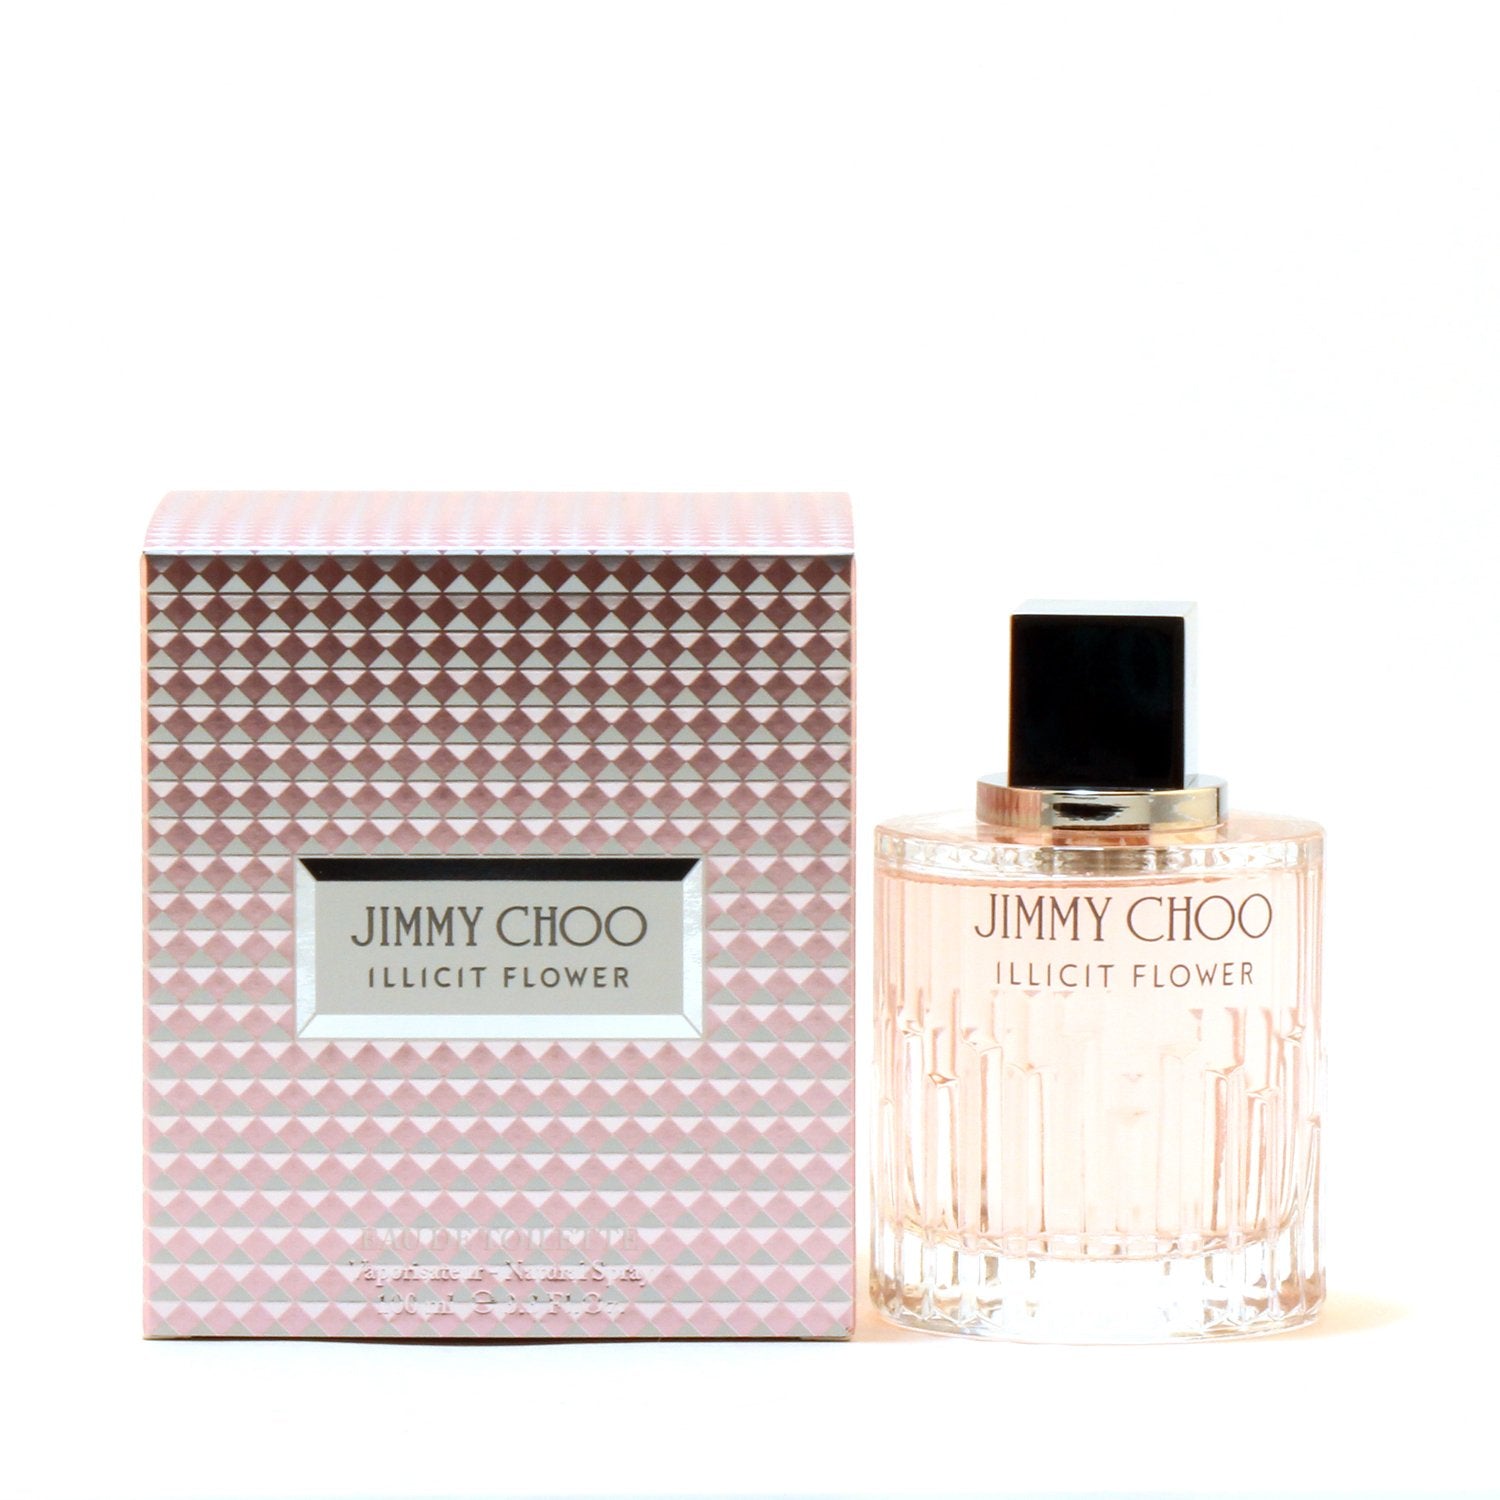 Perfume - JIMMY CHOO ILLICIT FLOWER FOR WOMEN  - EAU DE TOILETTE SPRAY